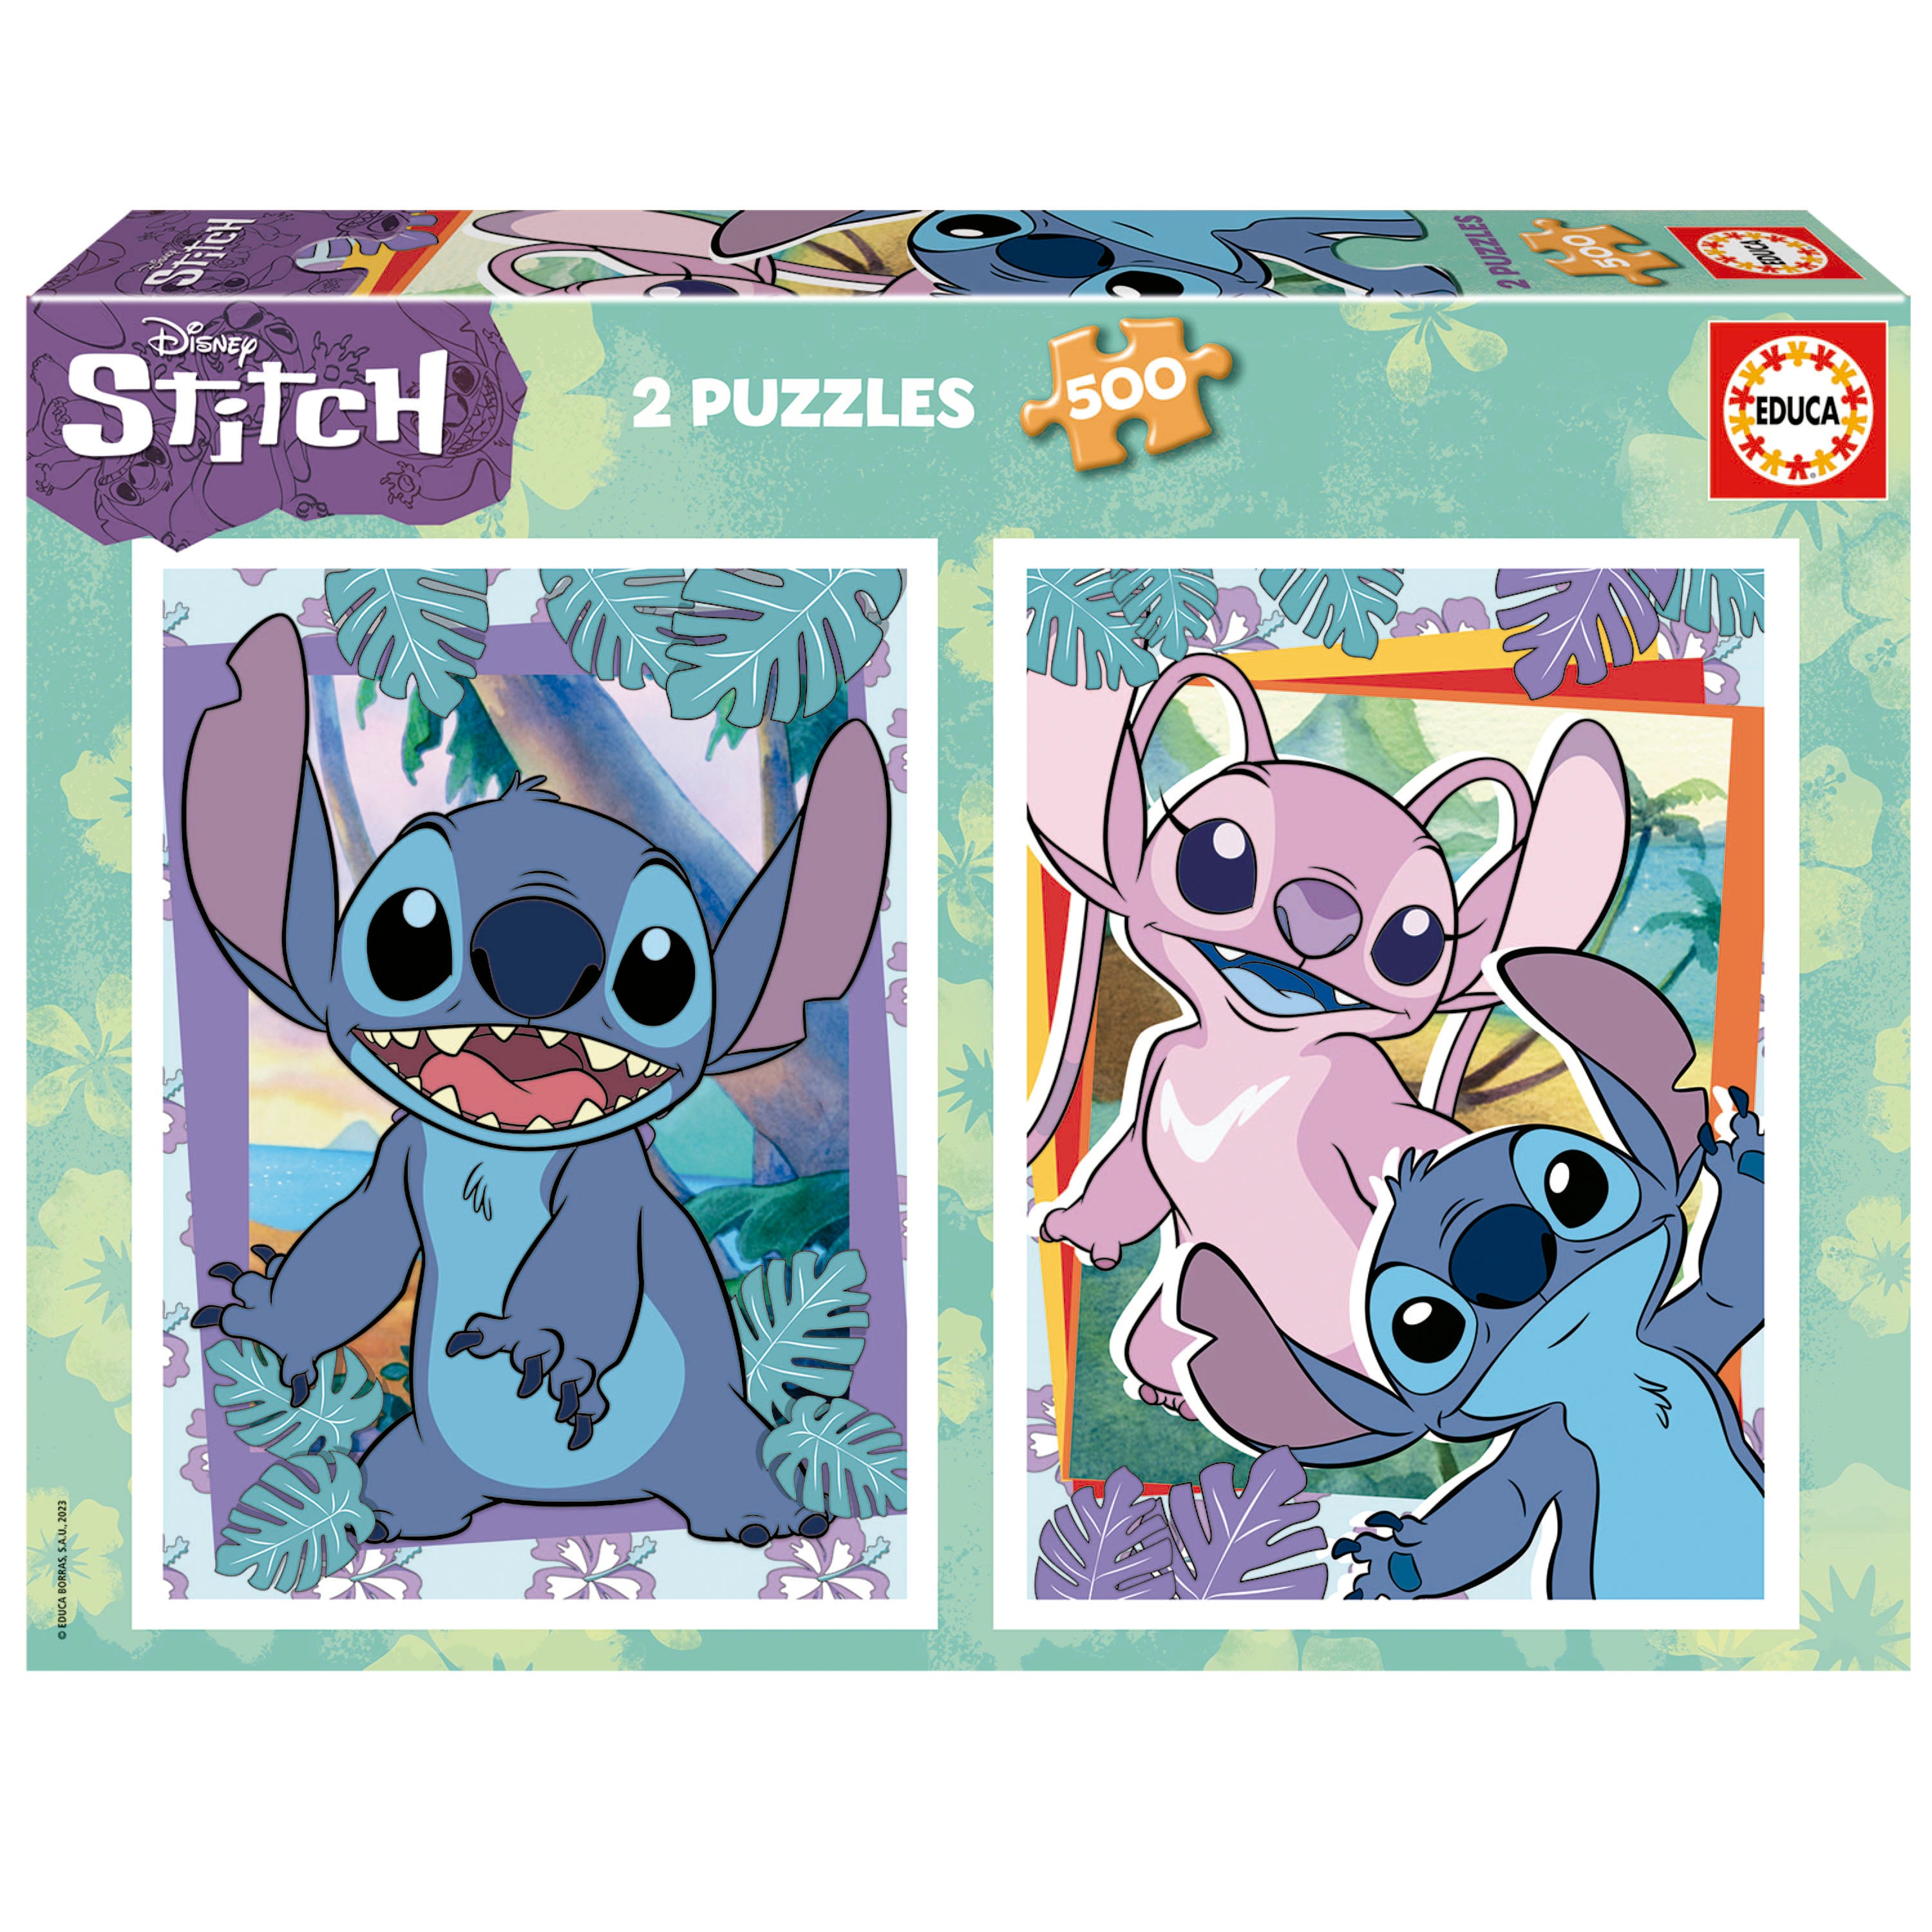 Disney Stitch vintage Puzzle 500 Pieces (New) 11 x 14